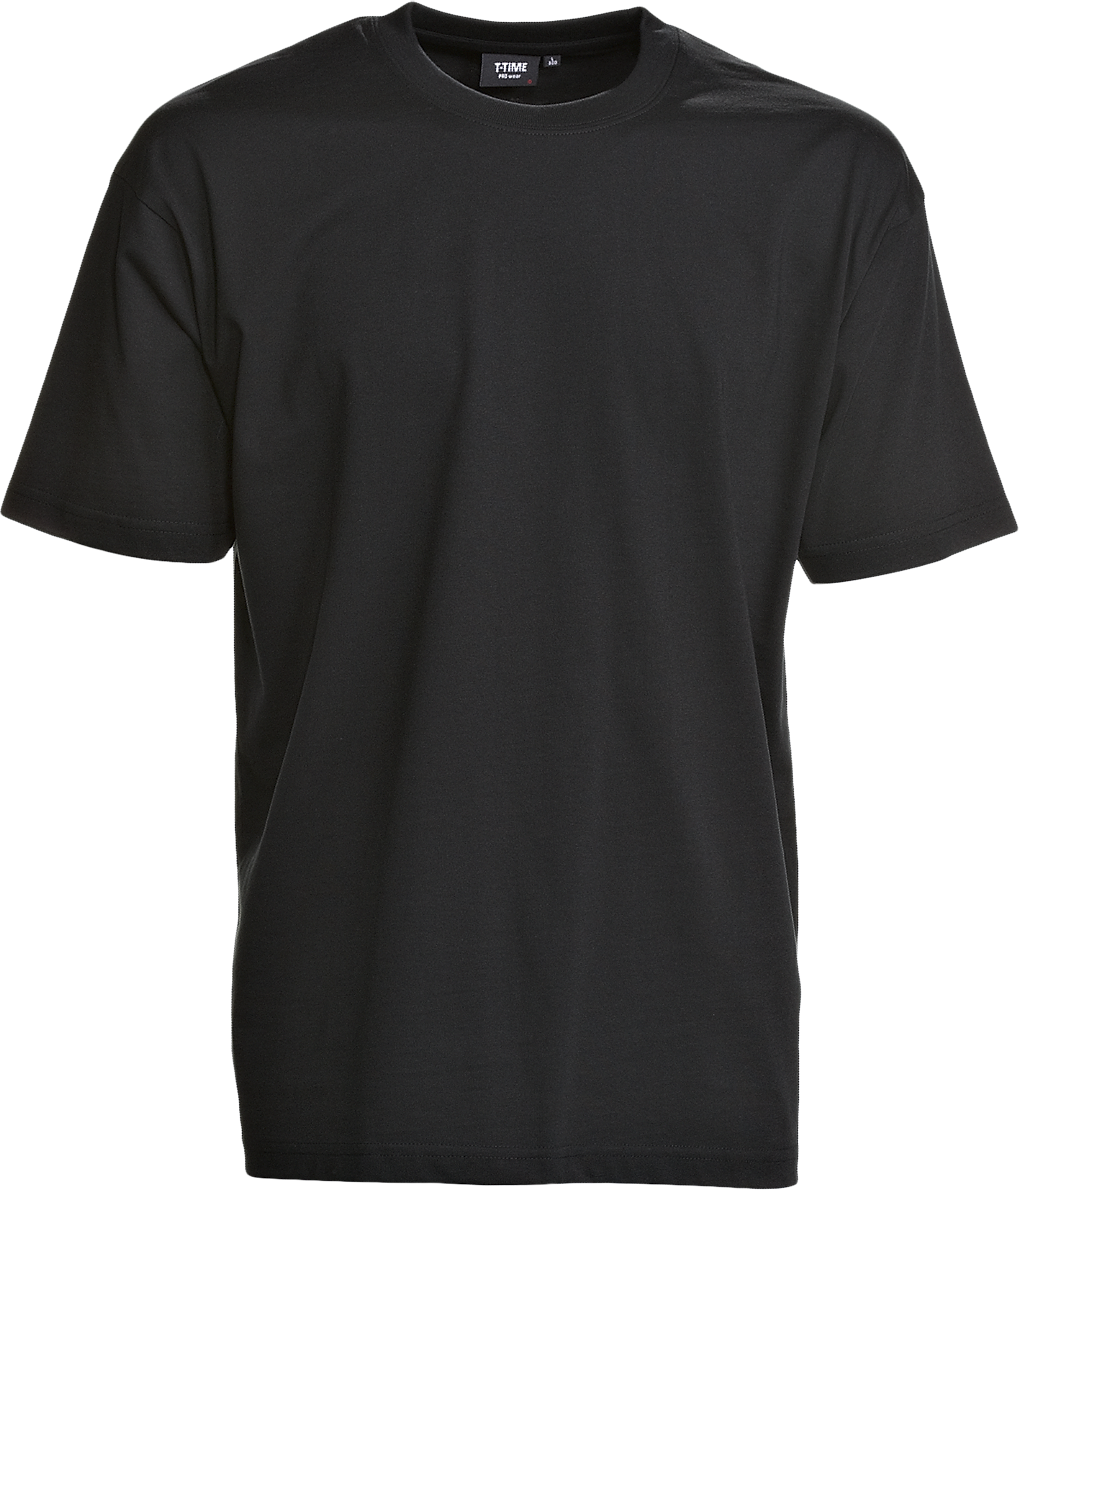 Svart Unisex T-shirt, Prowear (8150211)